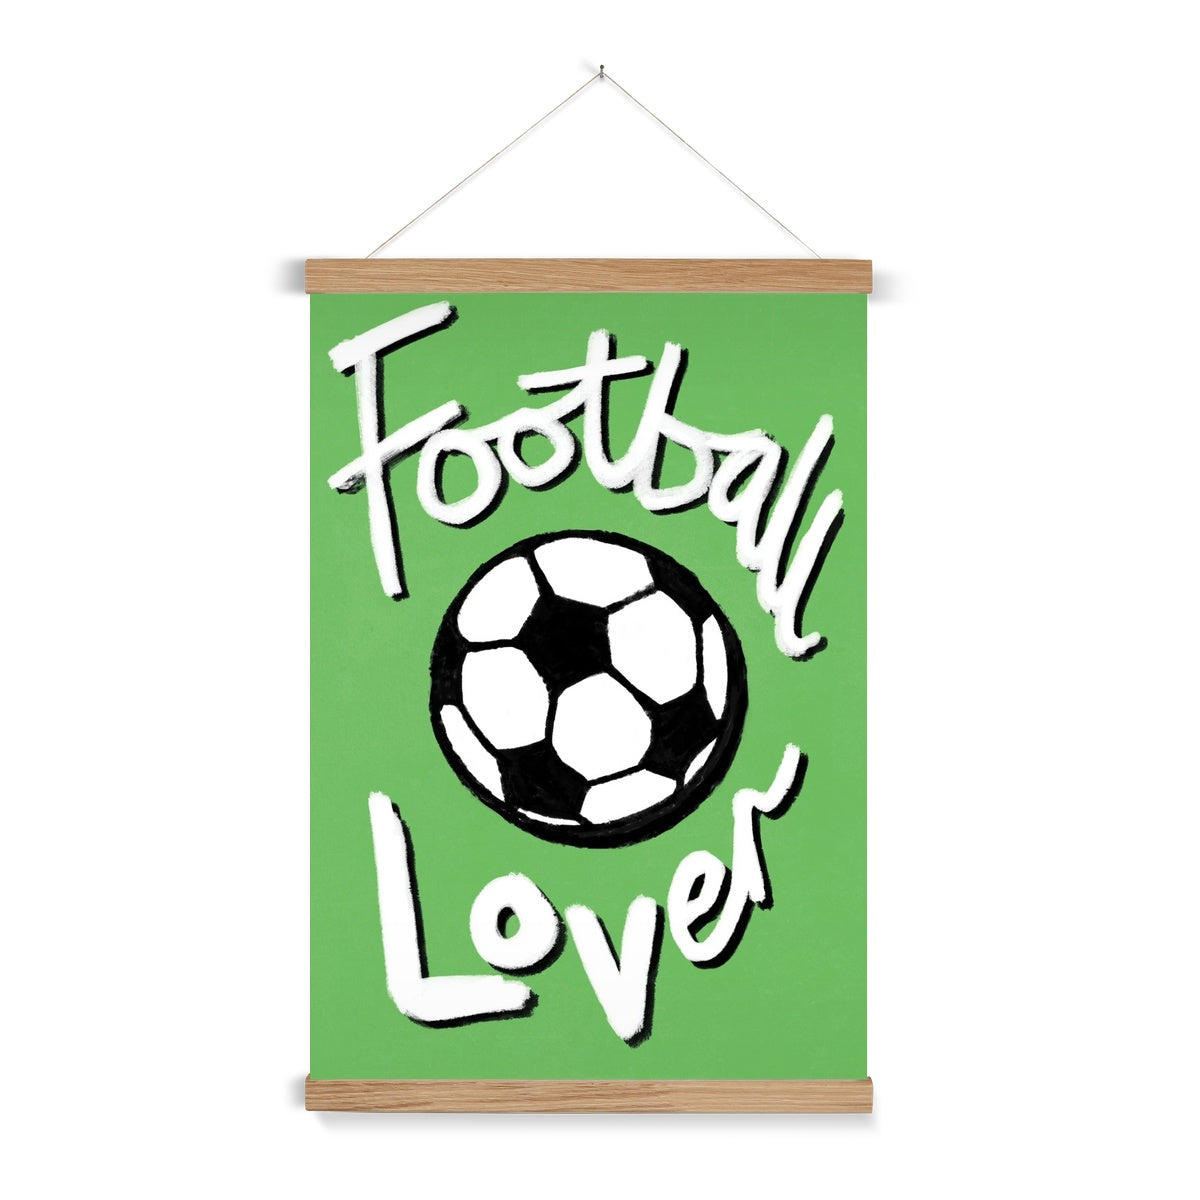 Football Lover Print - Green, White, Black Fine Art Print with Hanger